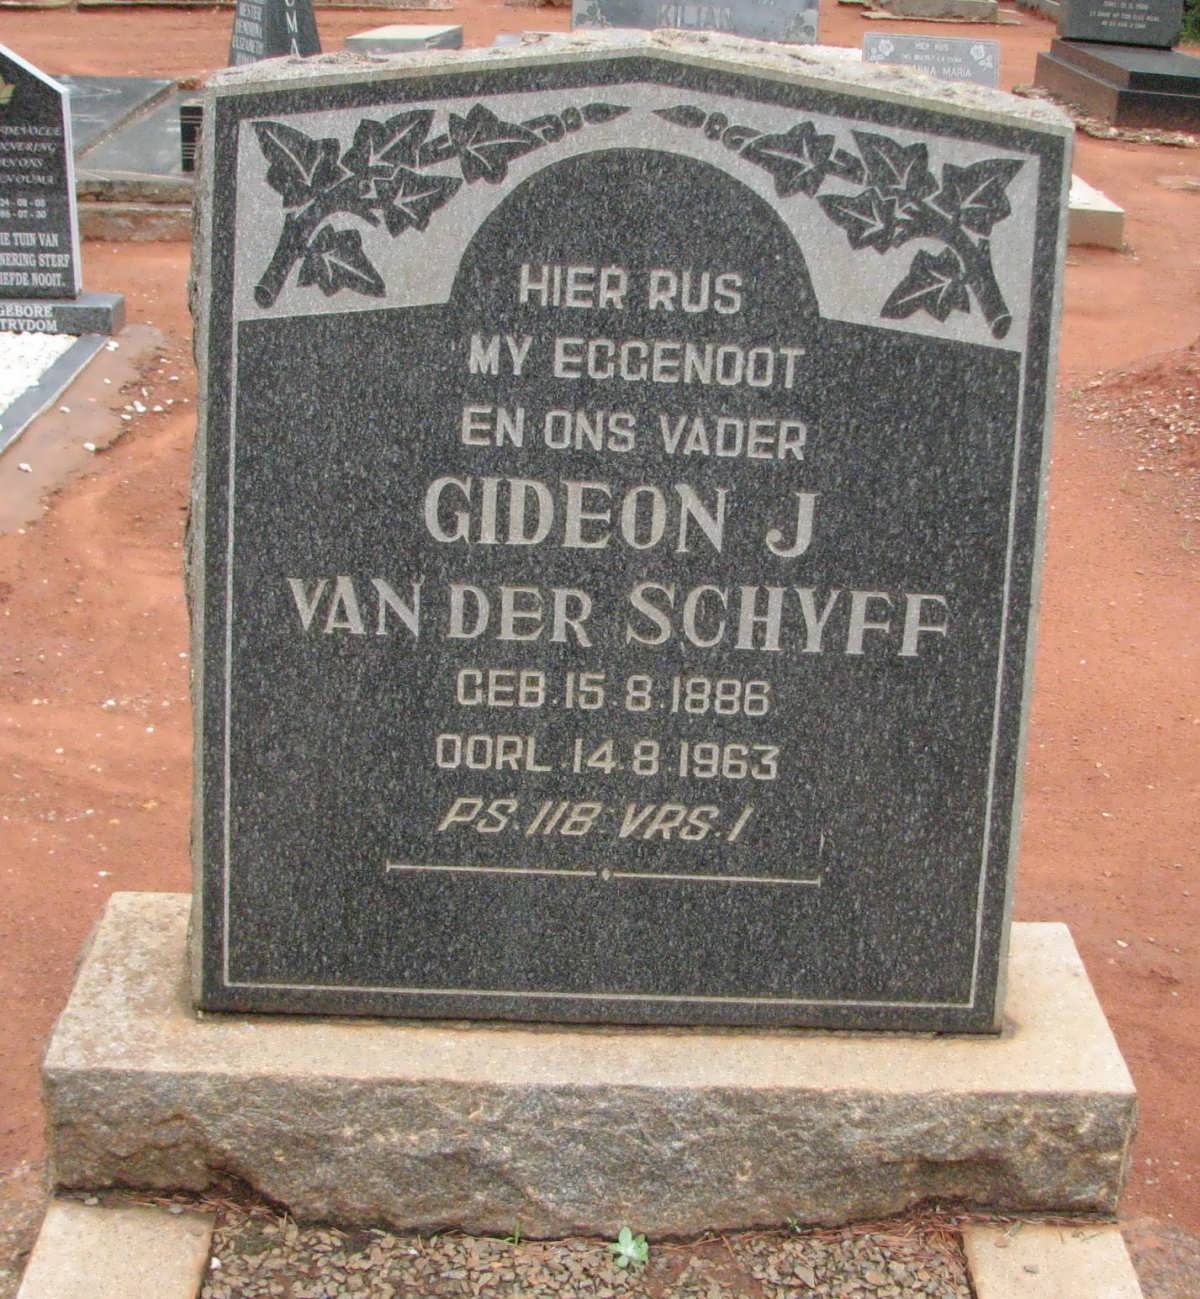 SCHYFF Gideon J., van der 1886-1963